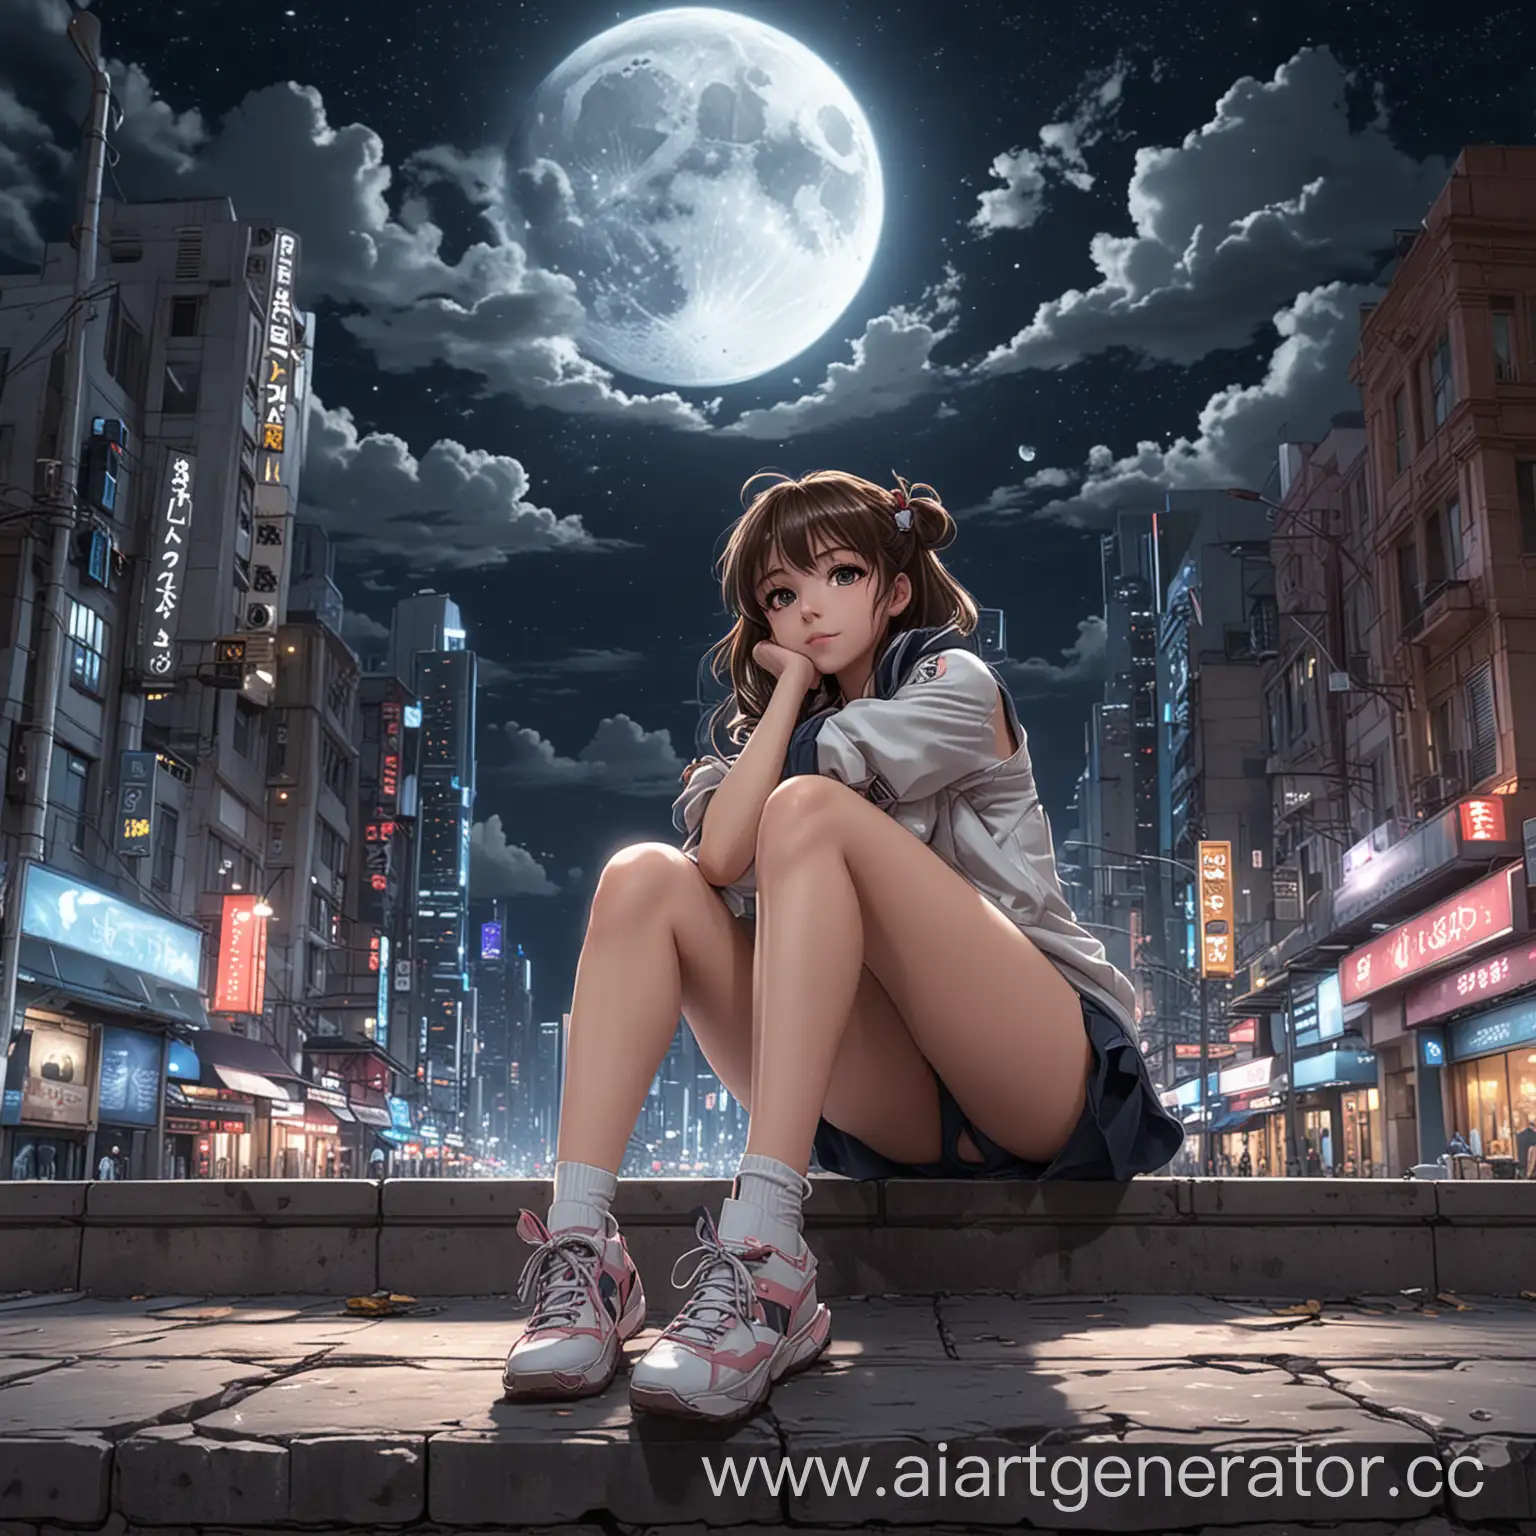 аниме девушка брюнетка сидит на тротуаре в городе будущего ночью на заднем плане тучи и луна